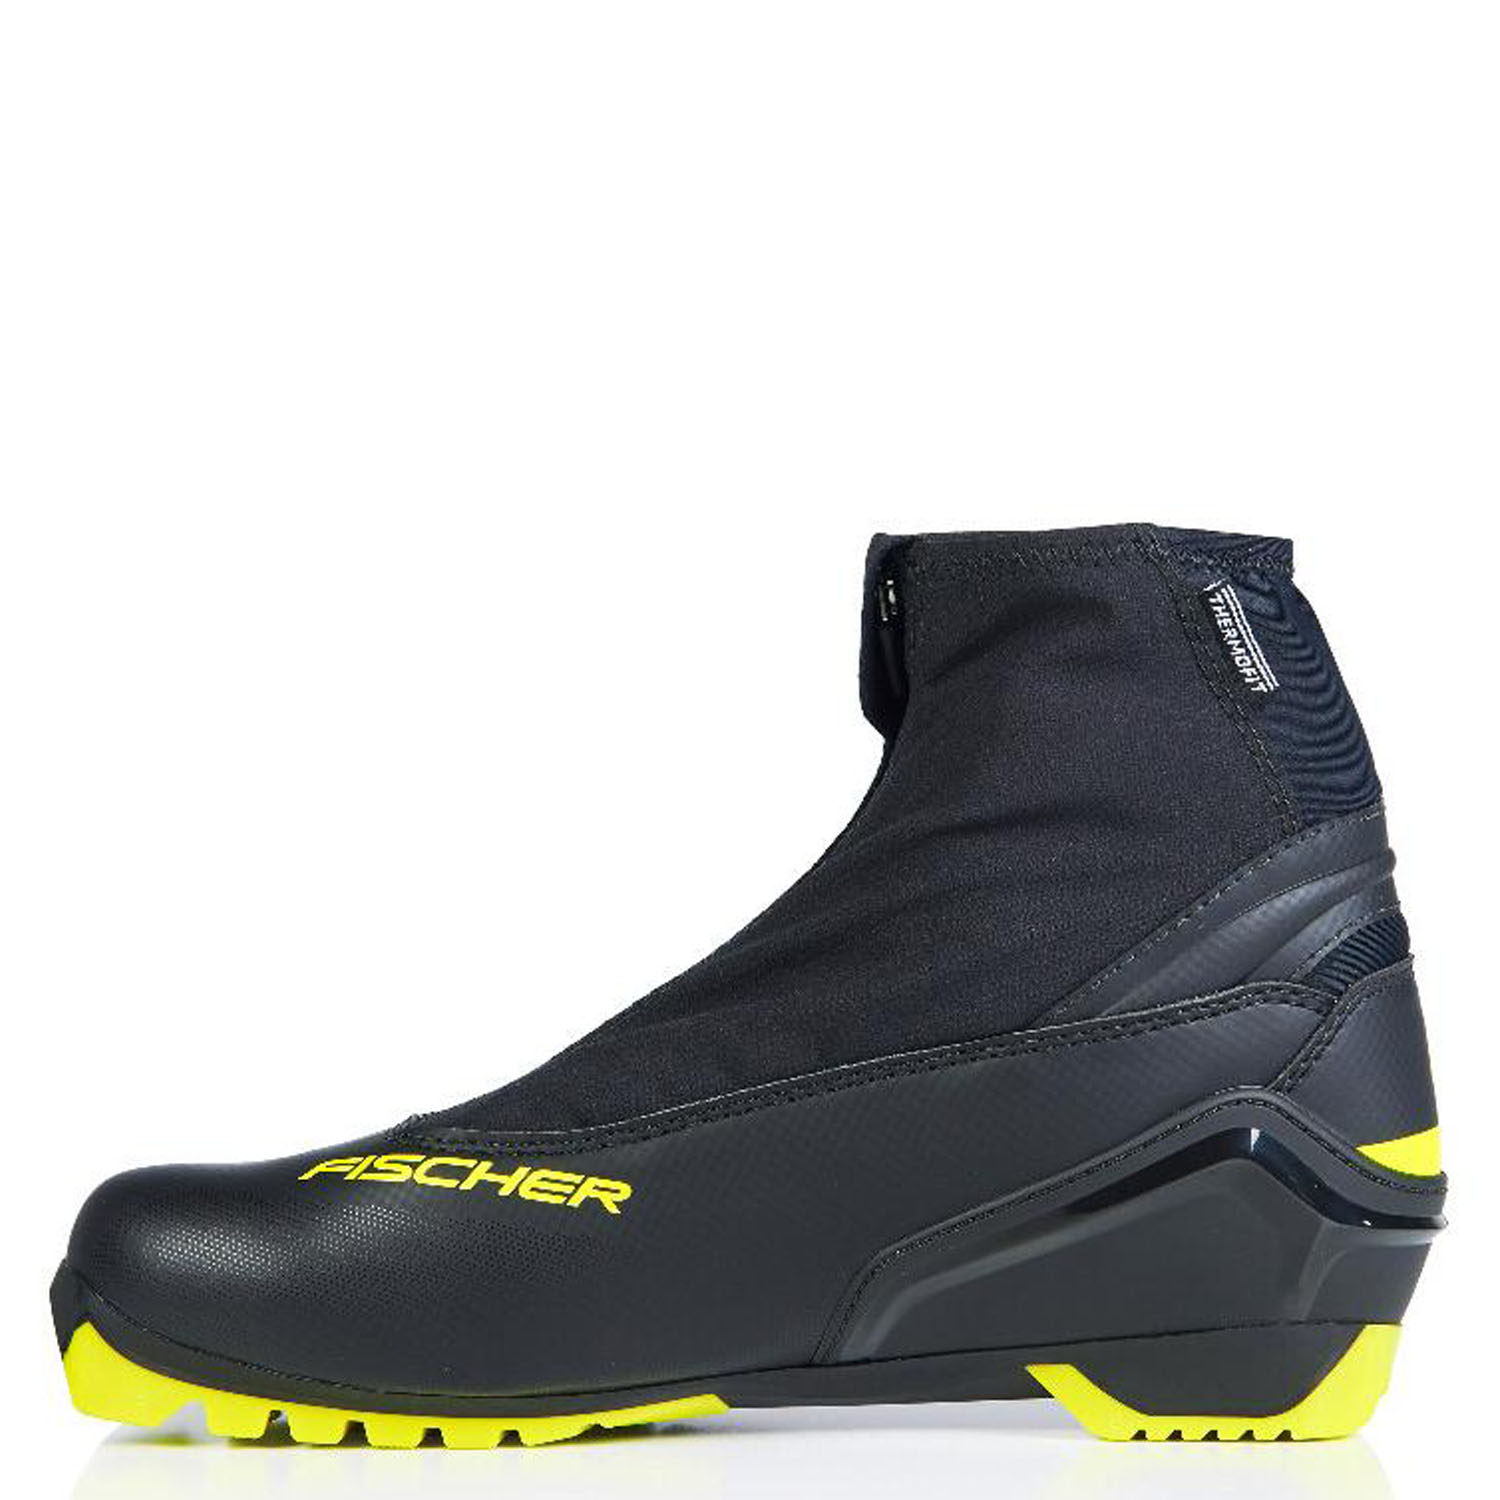 Лыжные ботинки FISCHER Rc5 Classic Черный